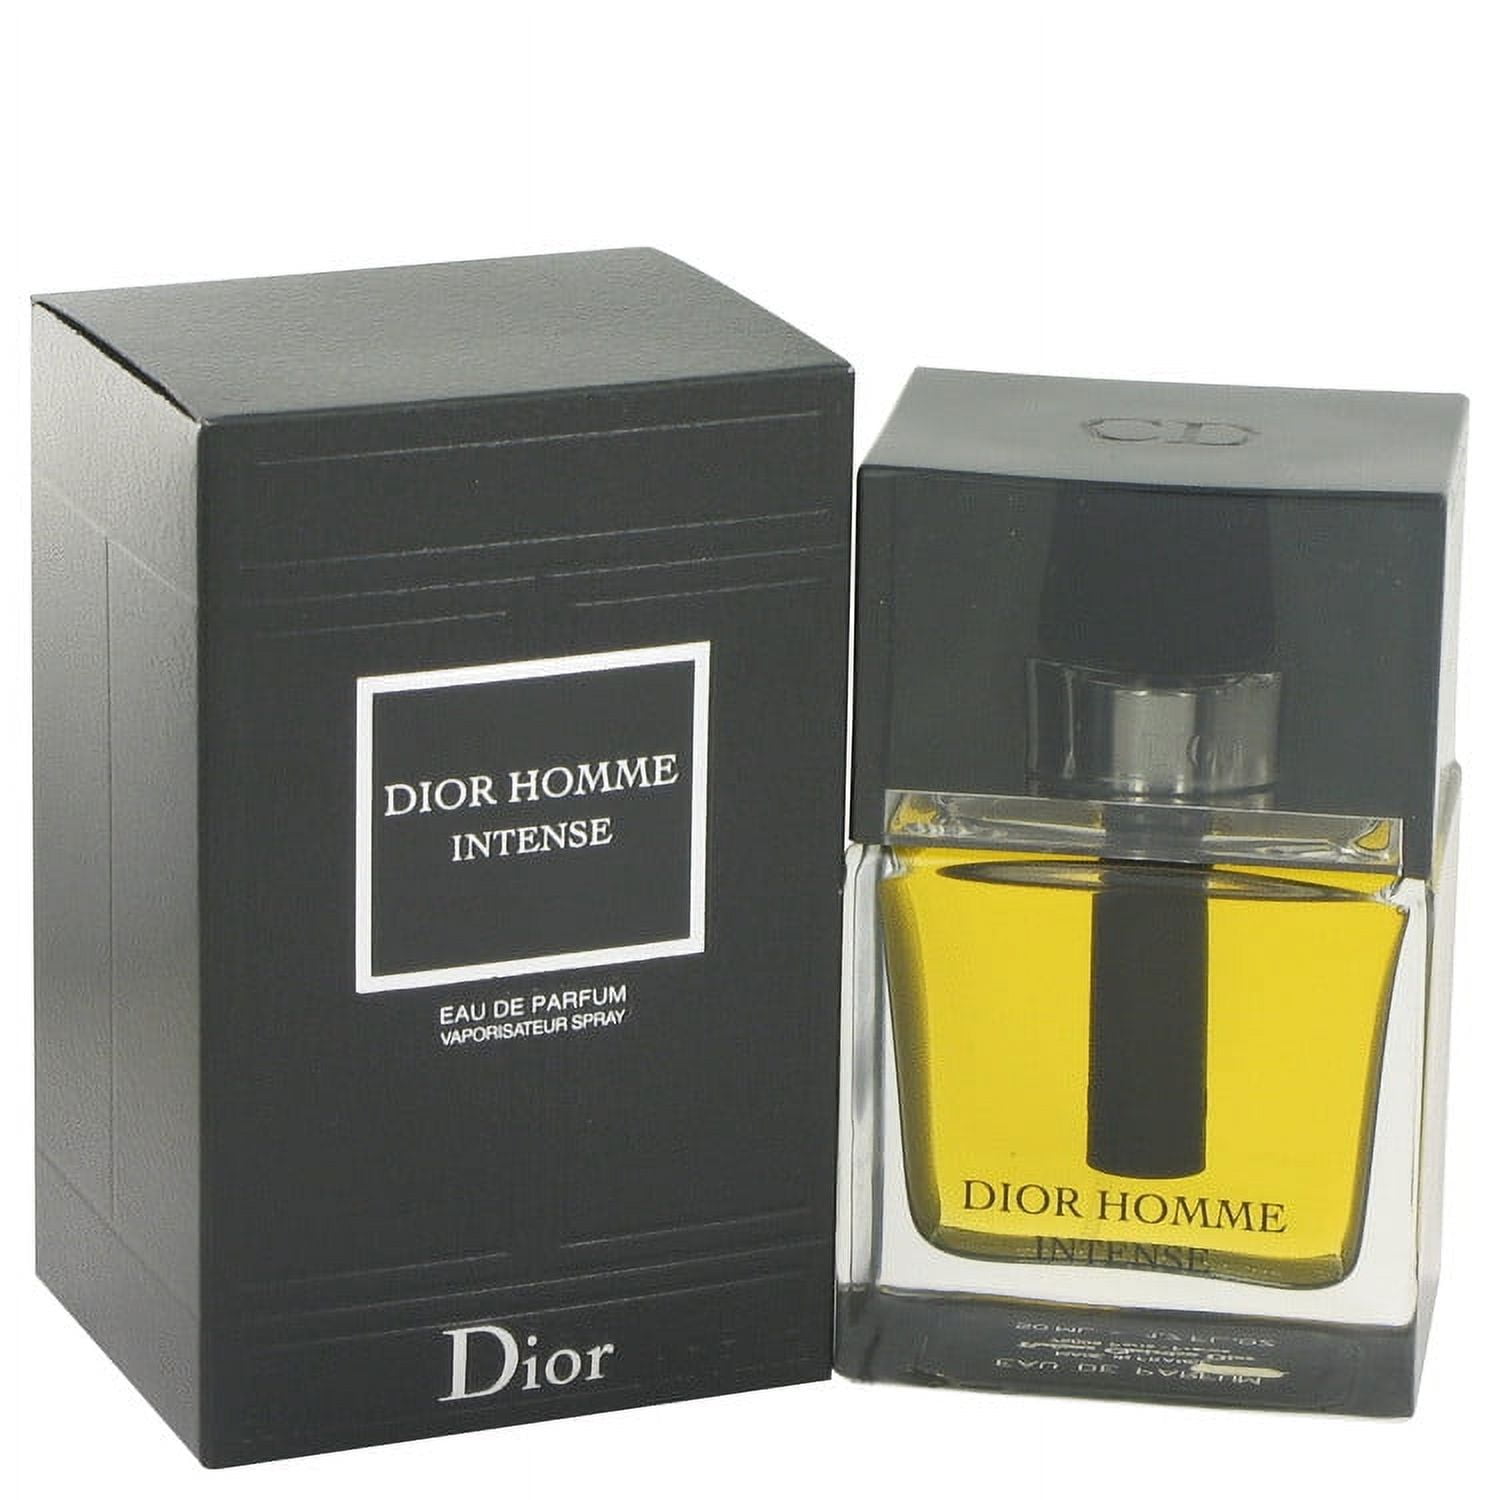 Dior homme купить мужской. Christian Dior homme Parfum 75 ml. Christian Dior homme intense. Dior Dior homme intense. Парфюм Dior homme intense.